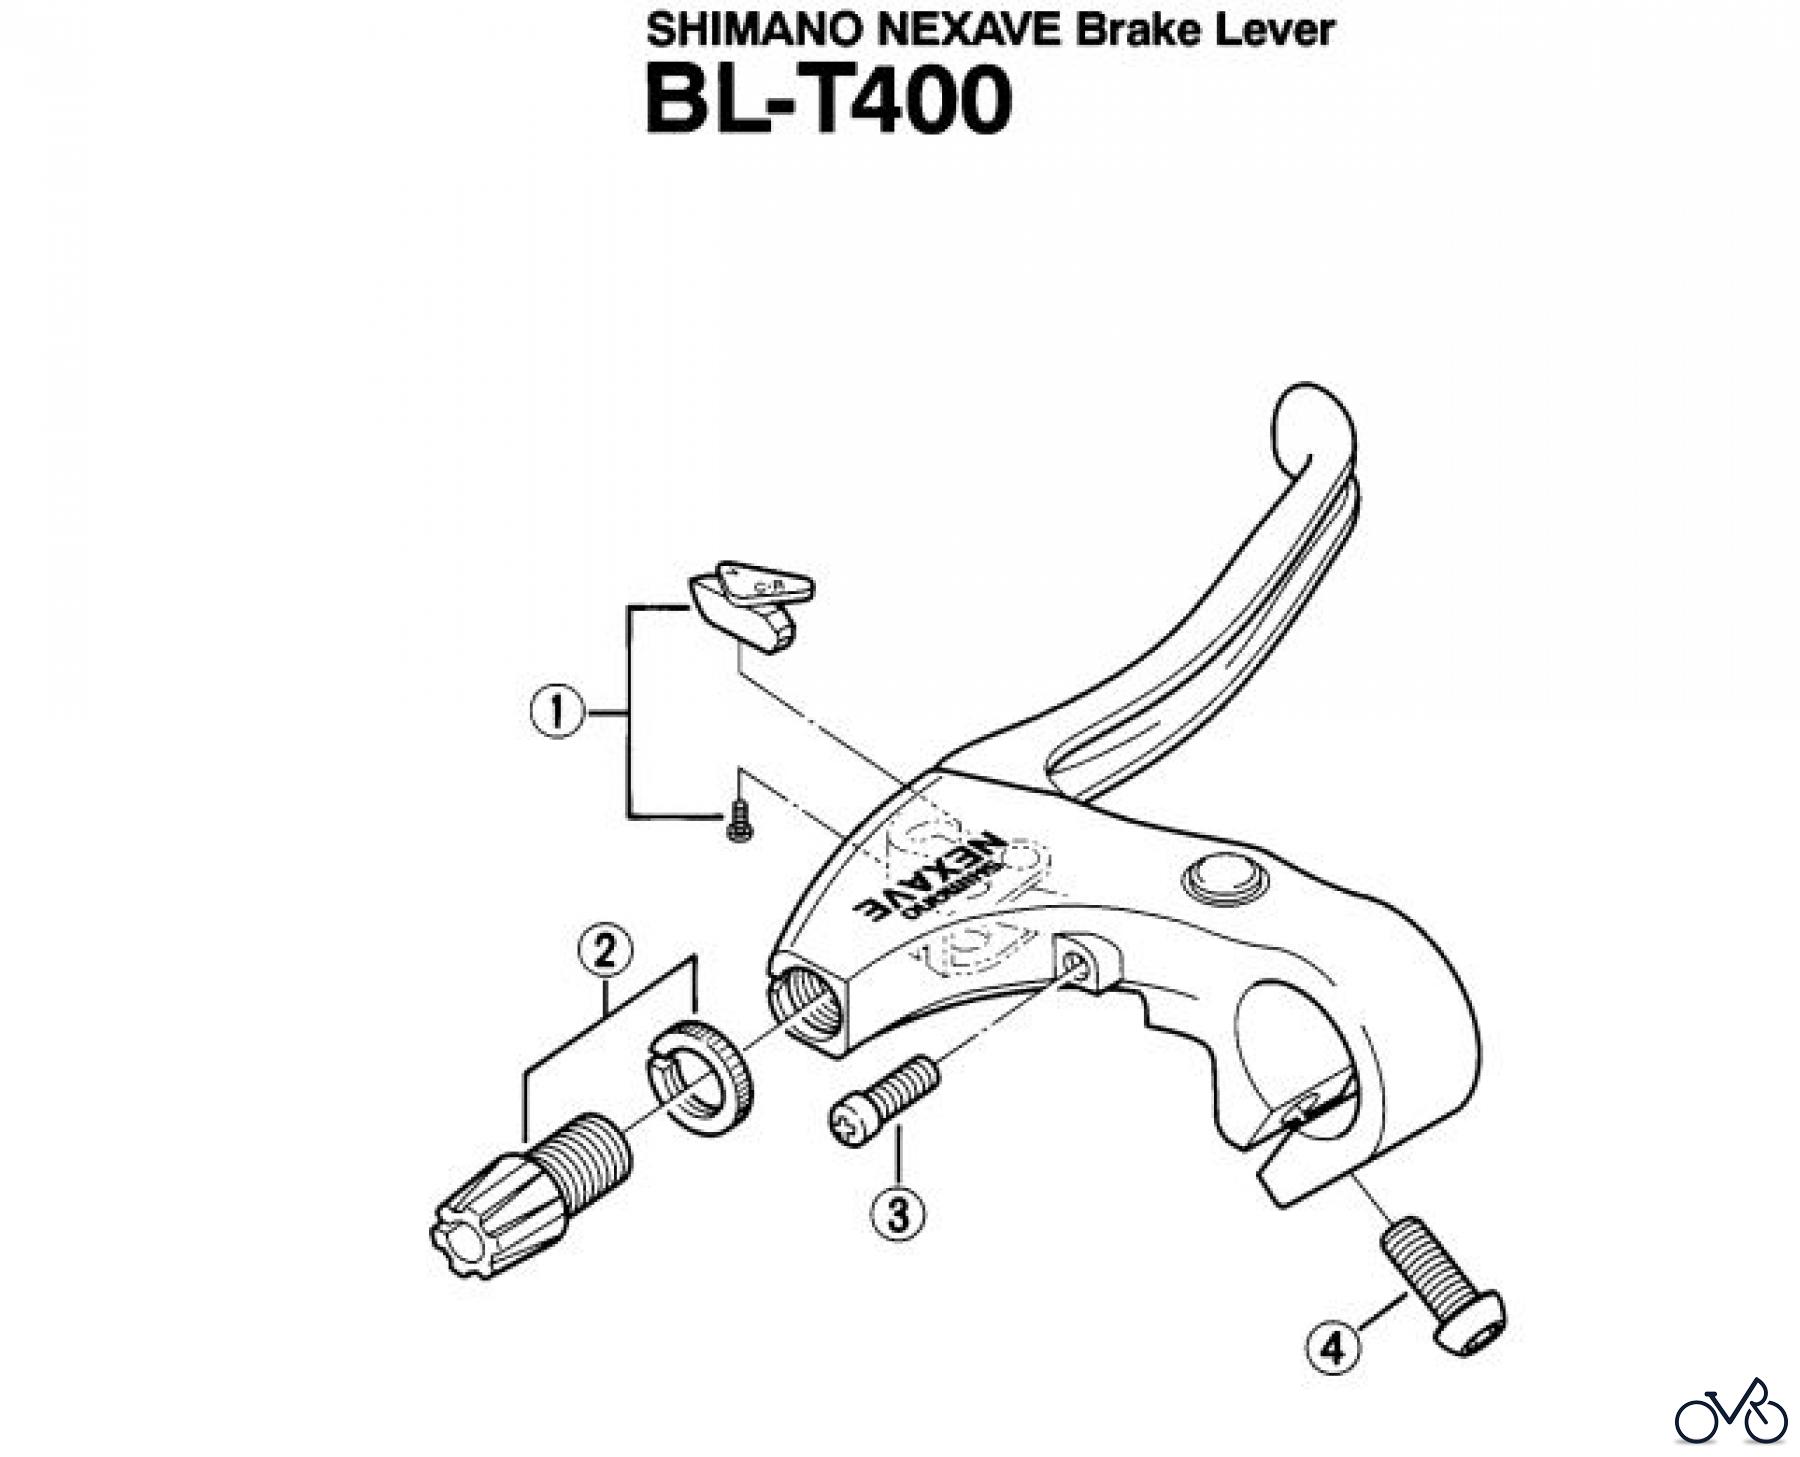  Shimano BL Brake Lever - Bremshebel BL-T400